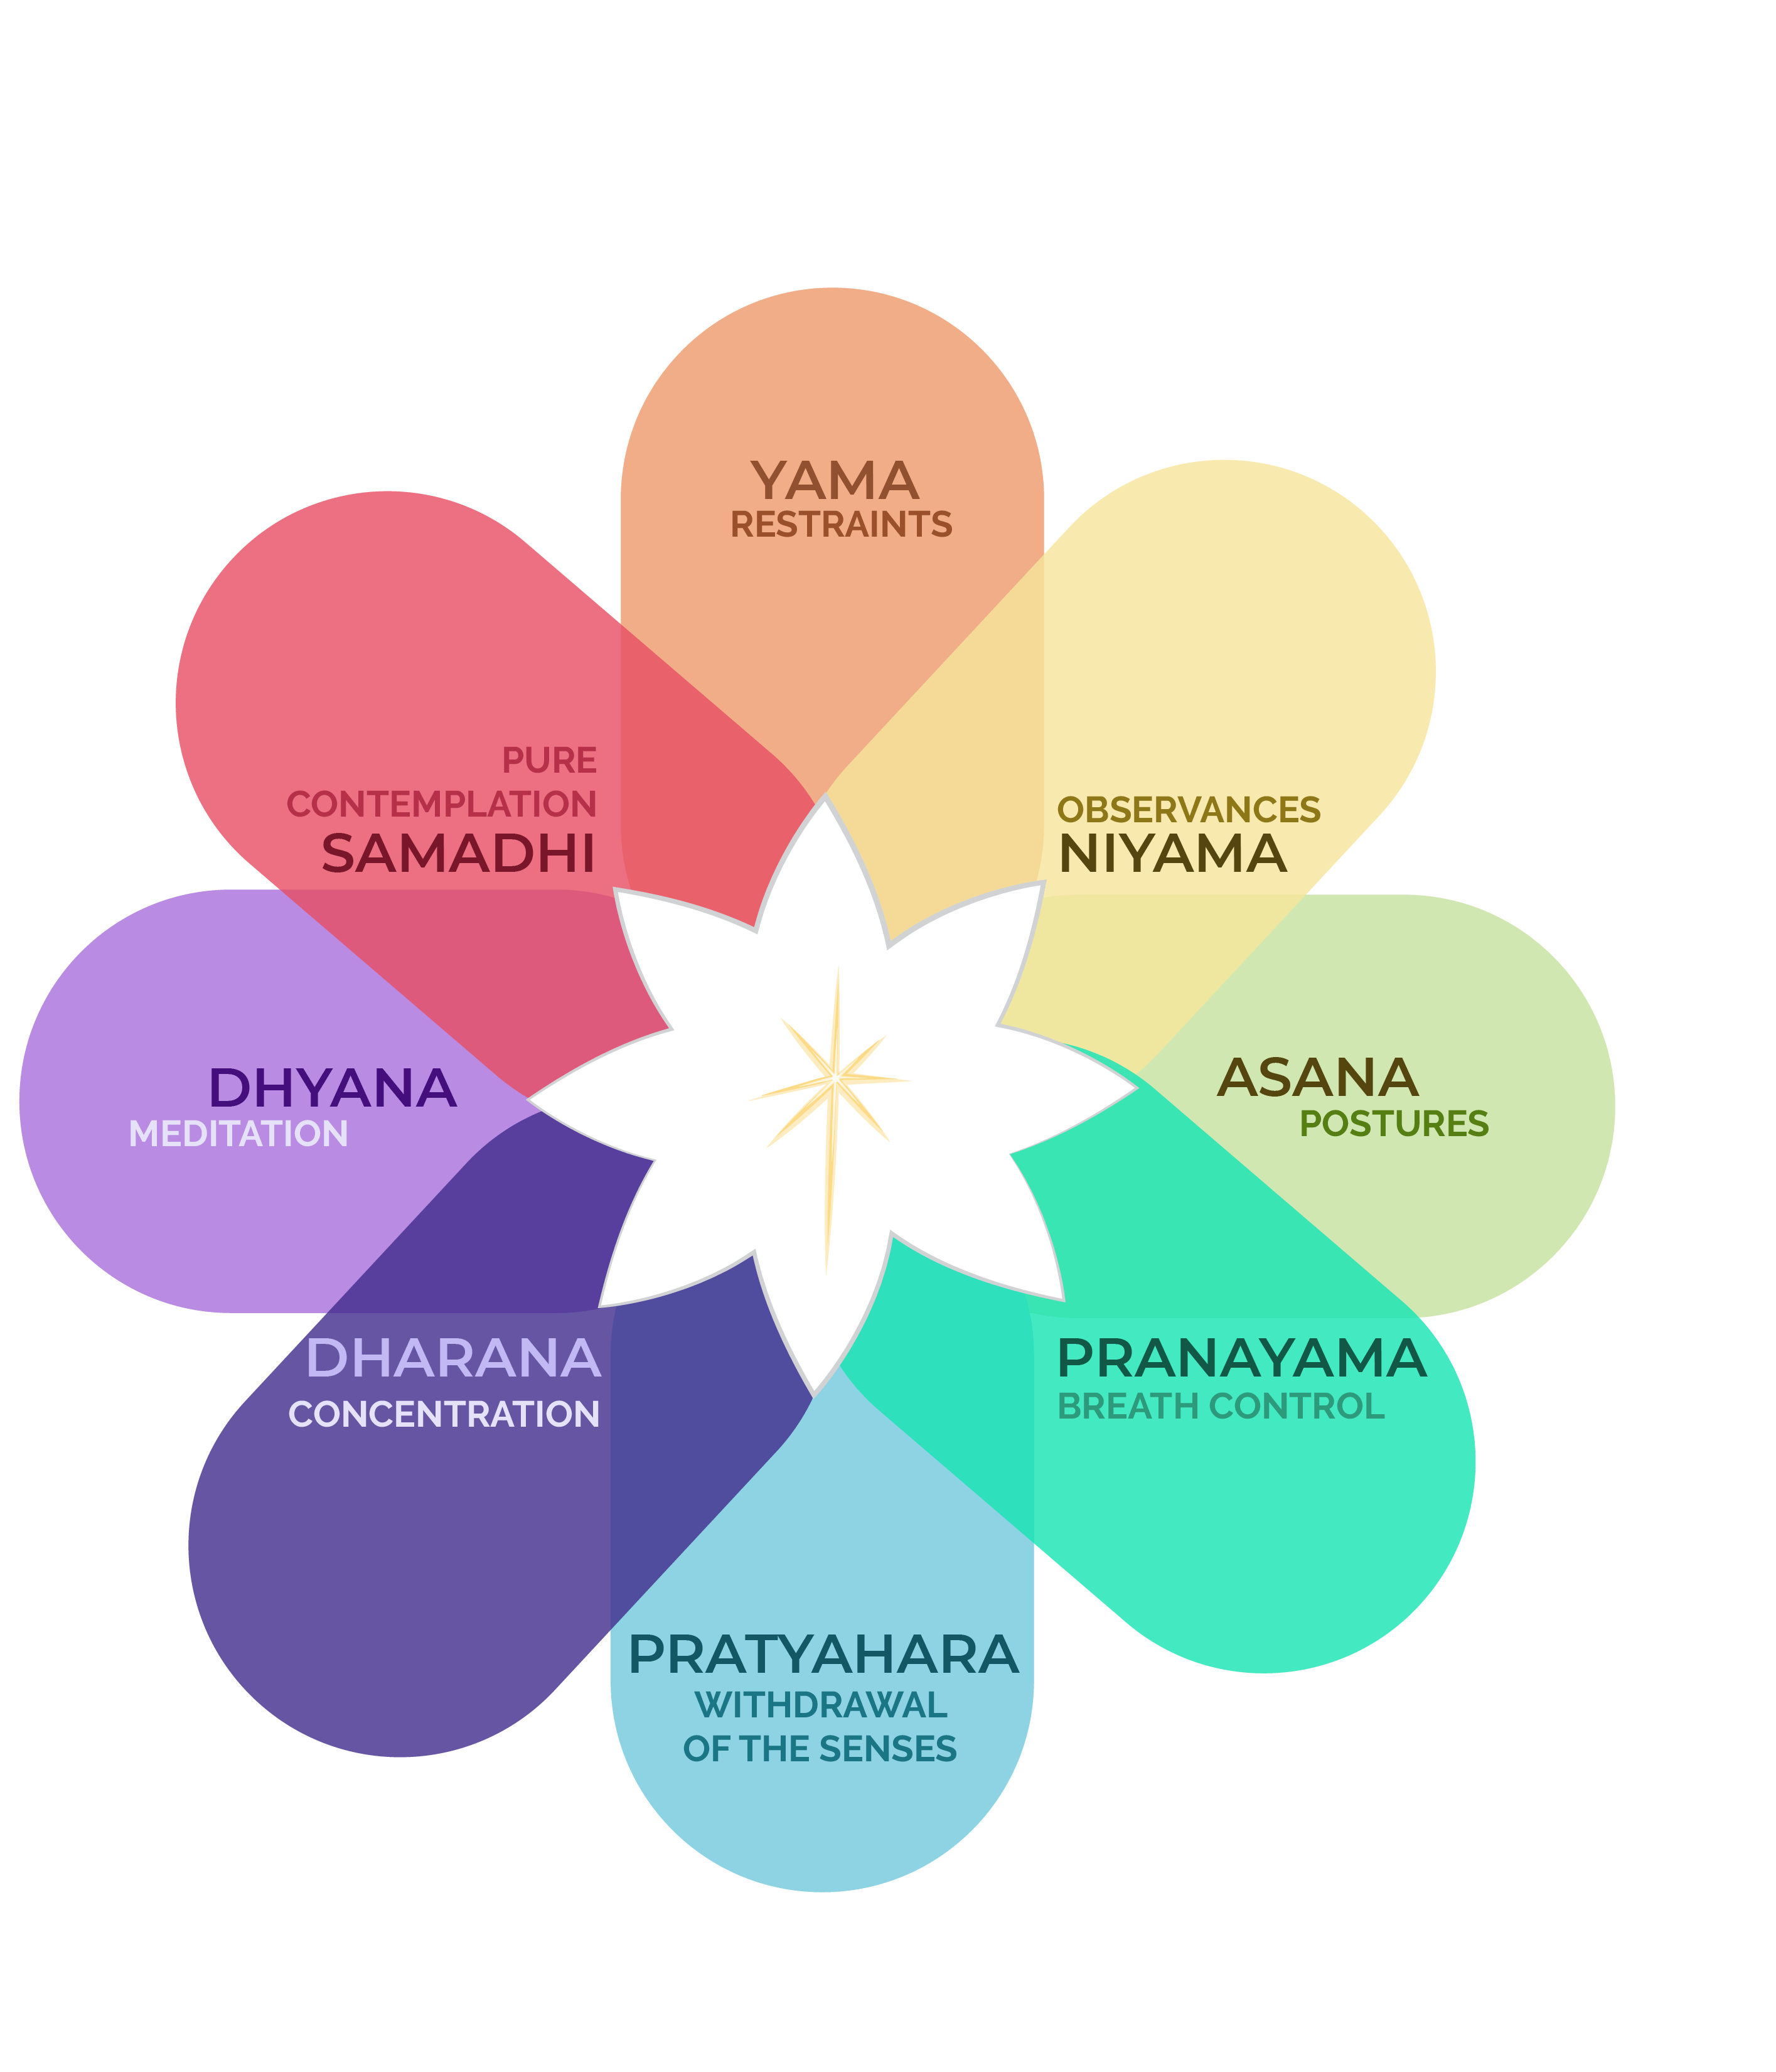 Niyama in Yoga and its 5 Parts